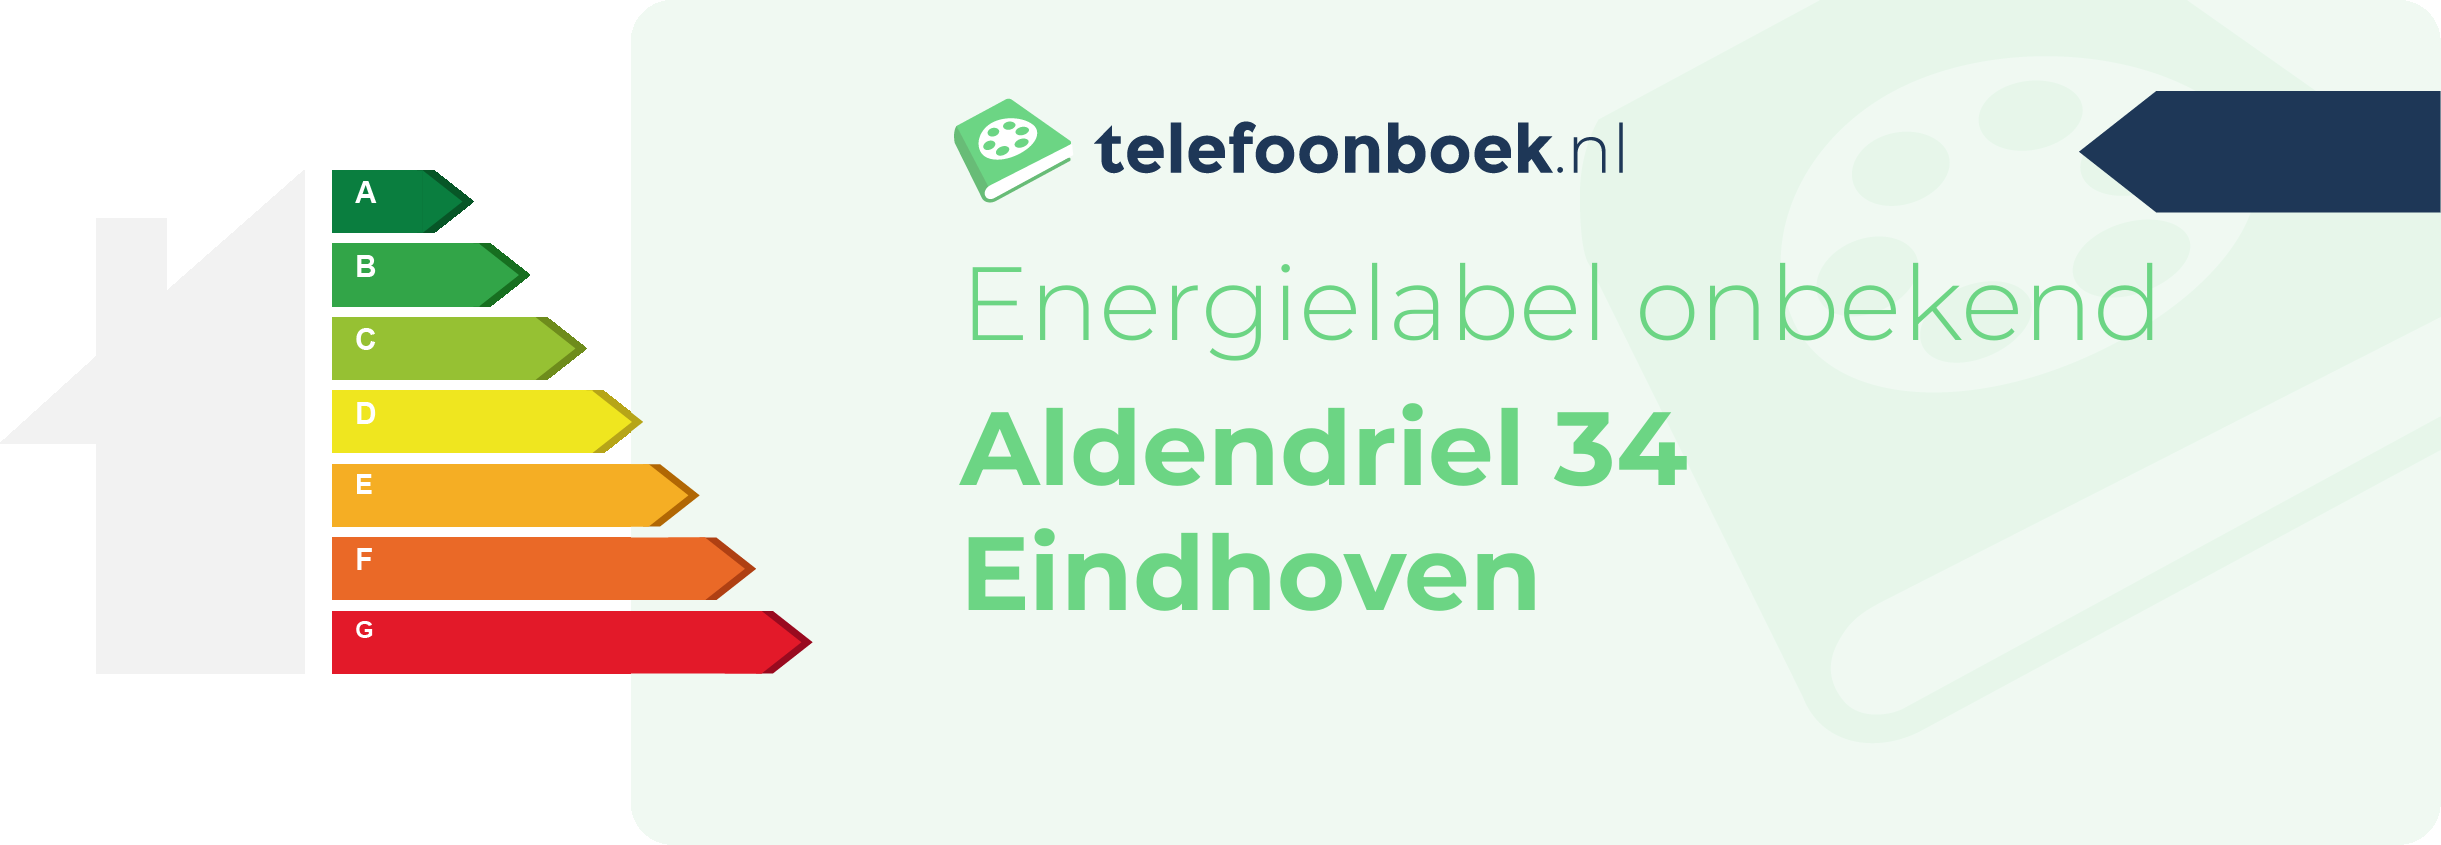 Energielabel Aldendriel 34 Eindhoven